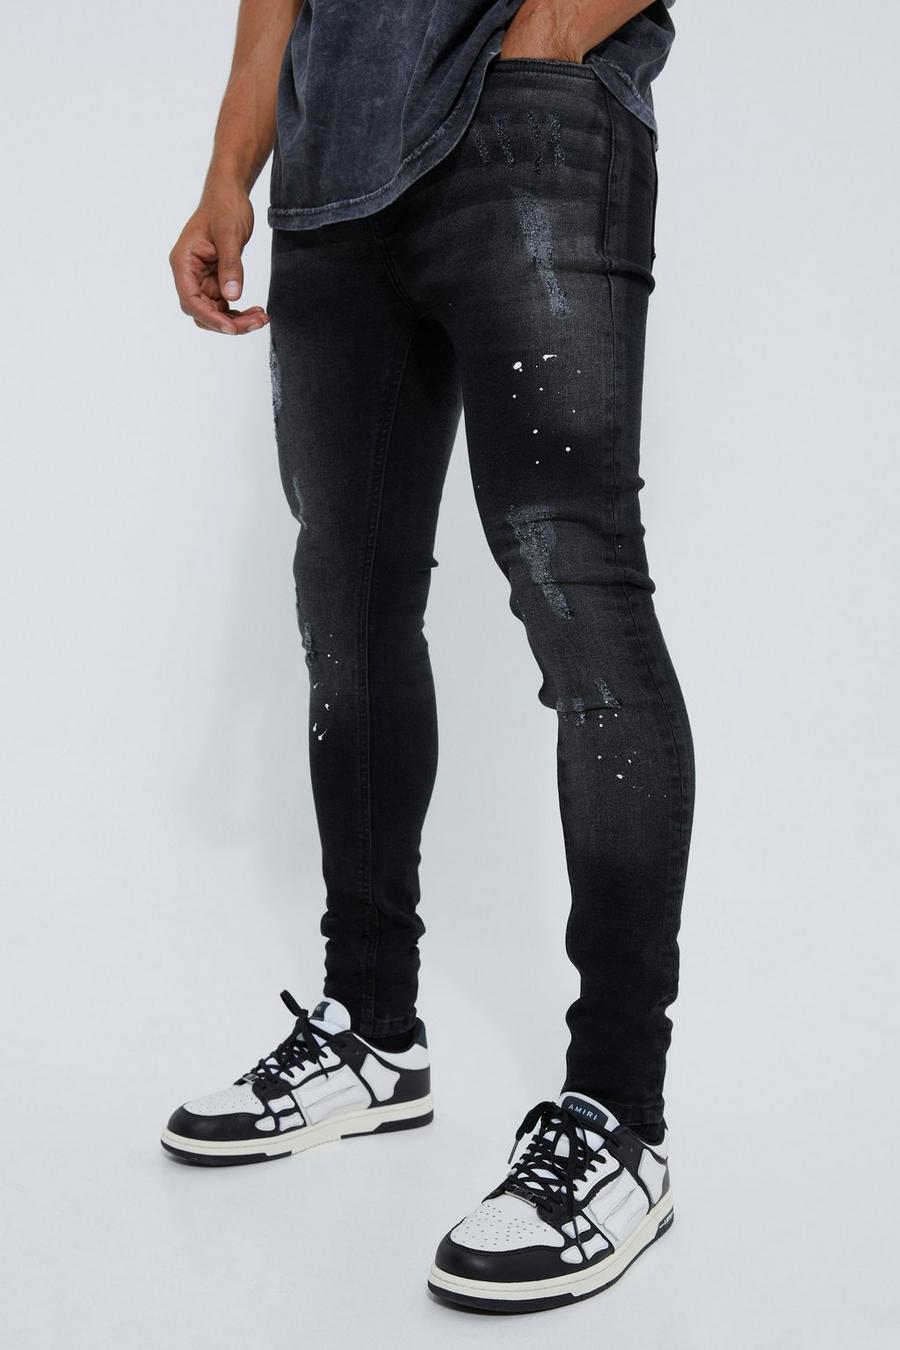 Zerrissene Super Skinny Jeans mit Farbspritzern, Washed black